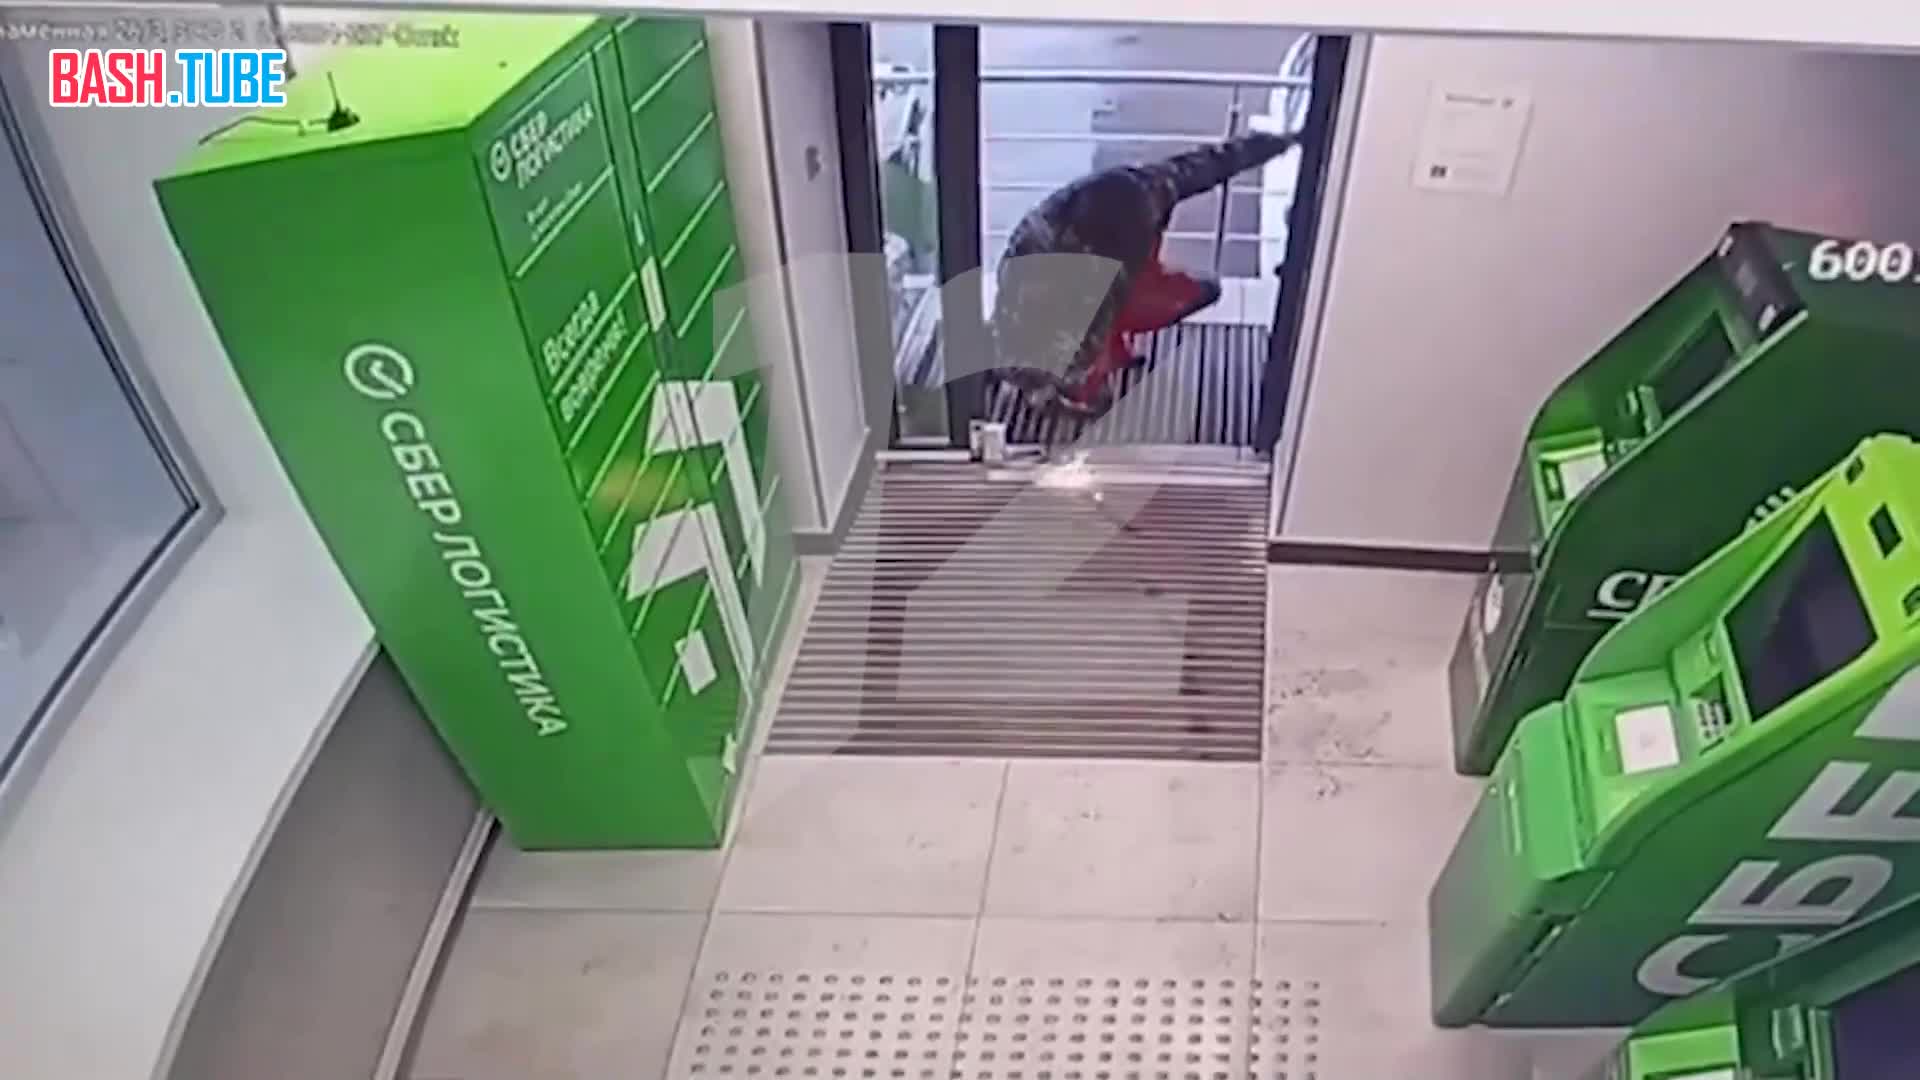  Появилось видео с камер наблюдения омского отделения Сбербанка, где неизвестный взорвал банкомат